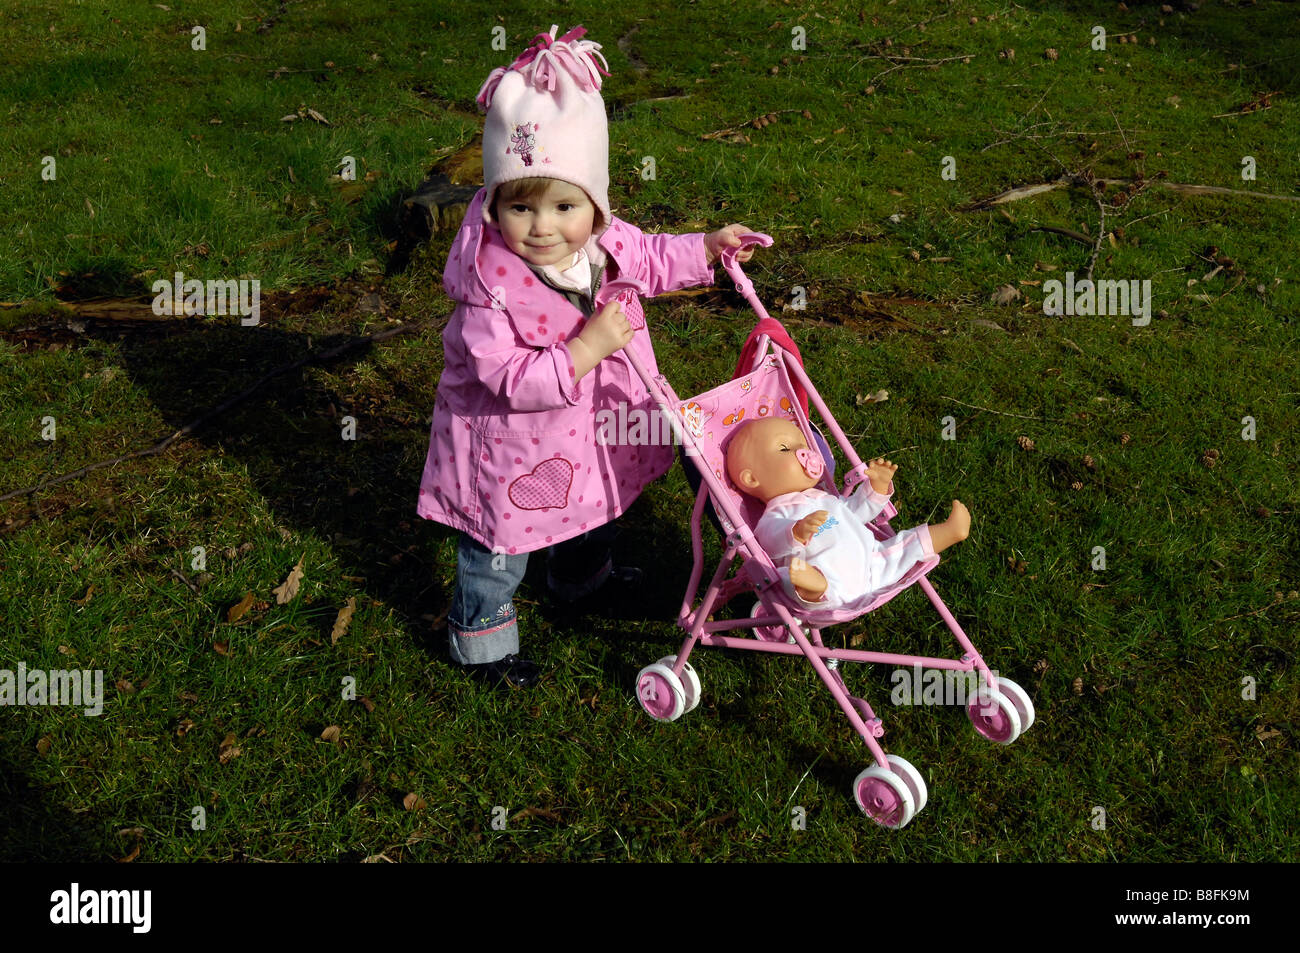 Bébé fille poussant en dehors de la pram toy dolly Photo Stock - Alamy